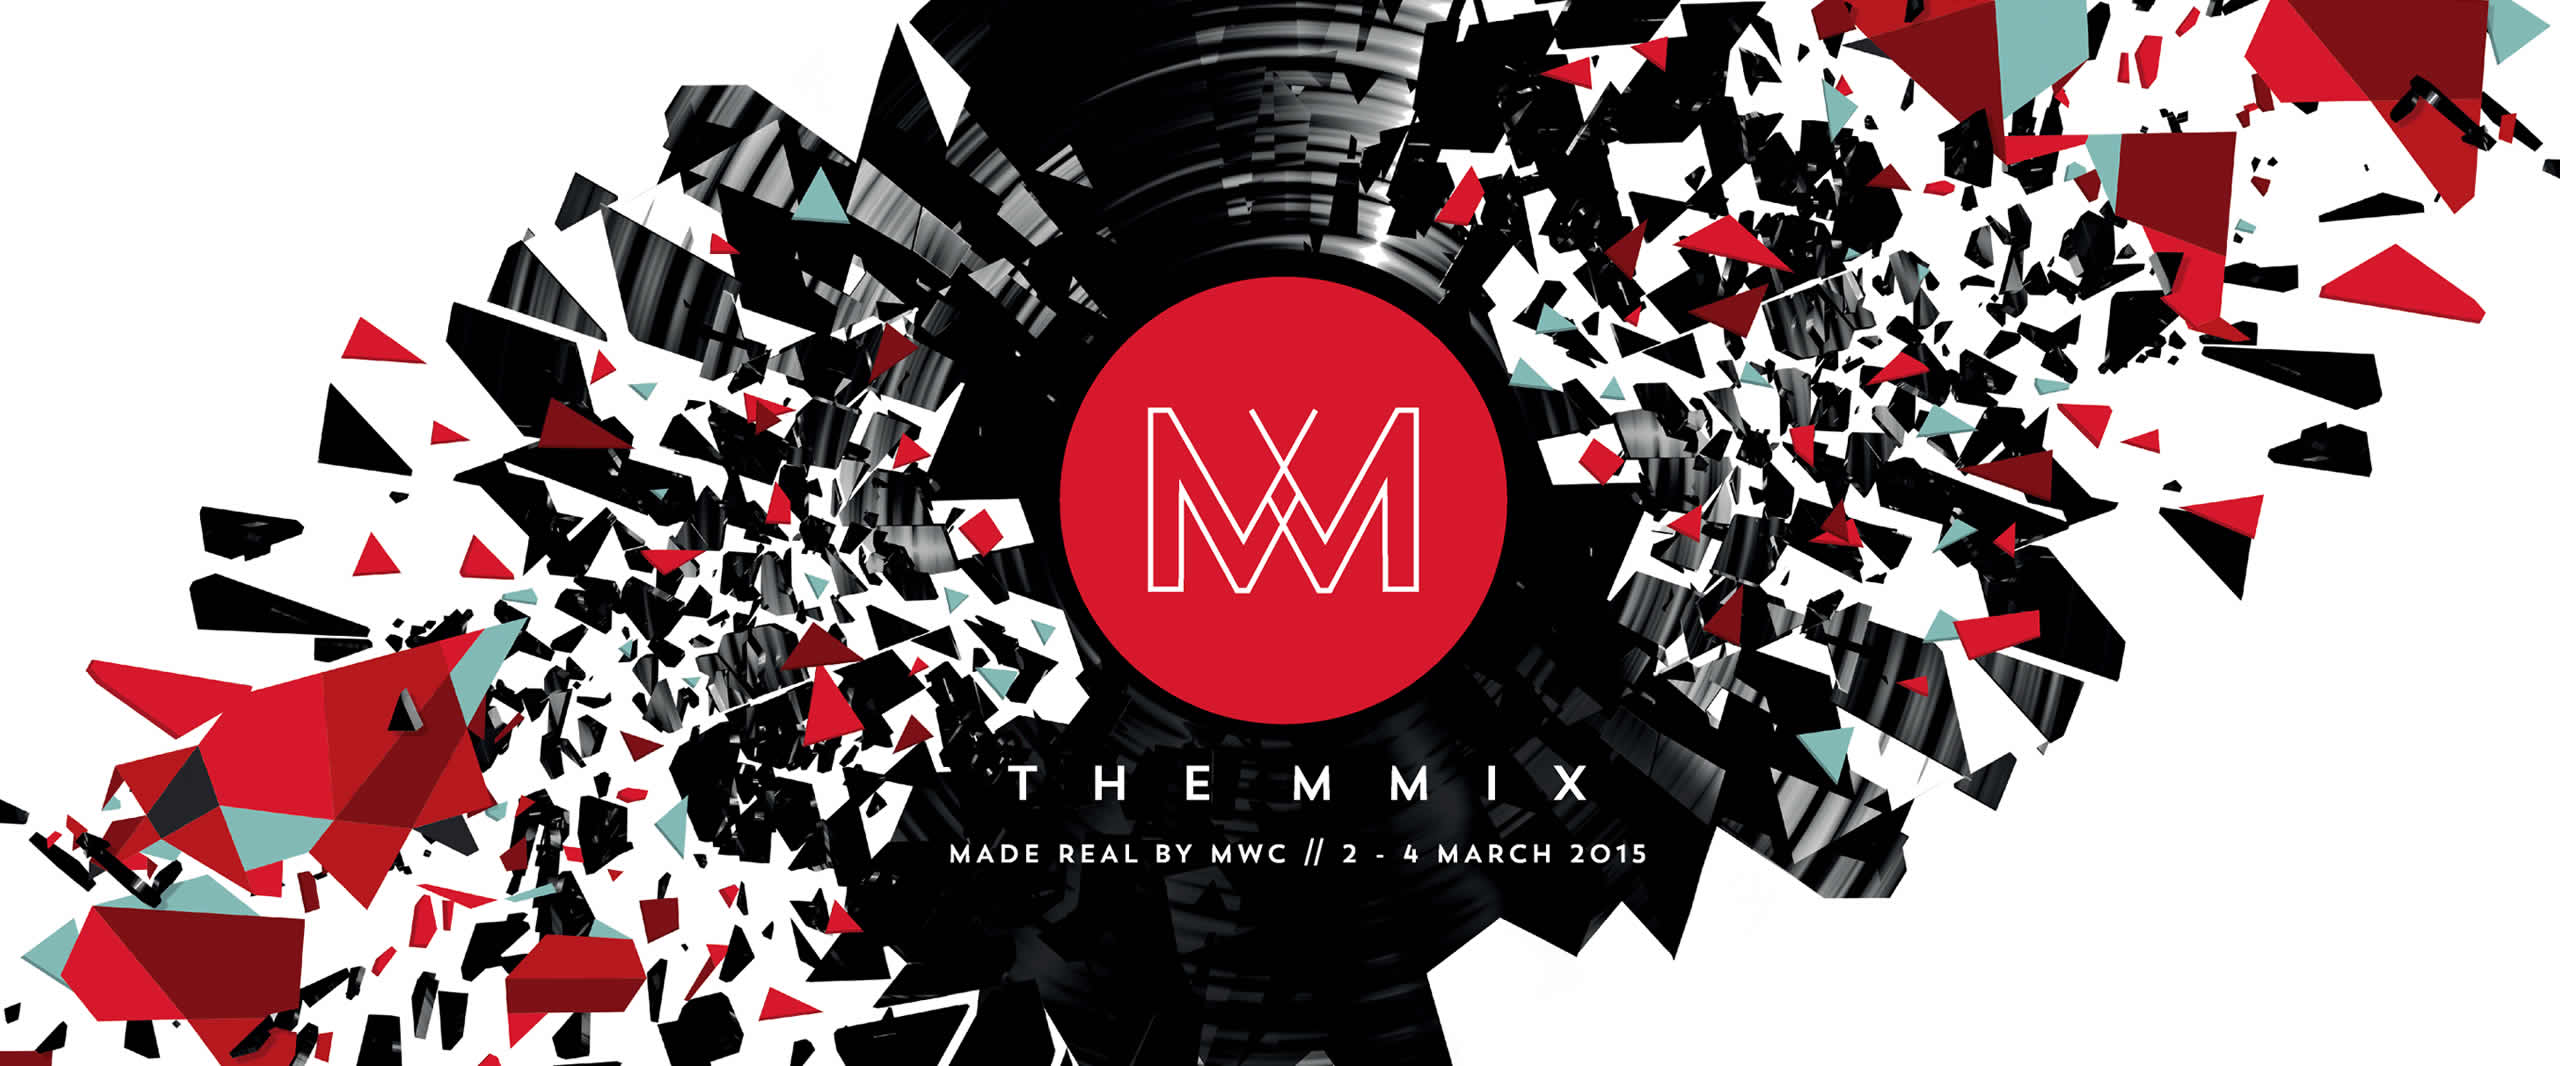 mmix mobile world congress 2015